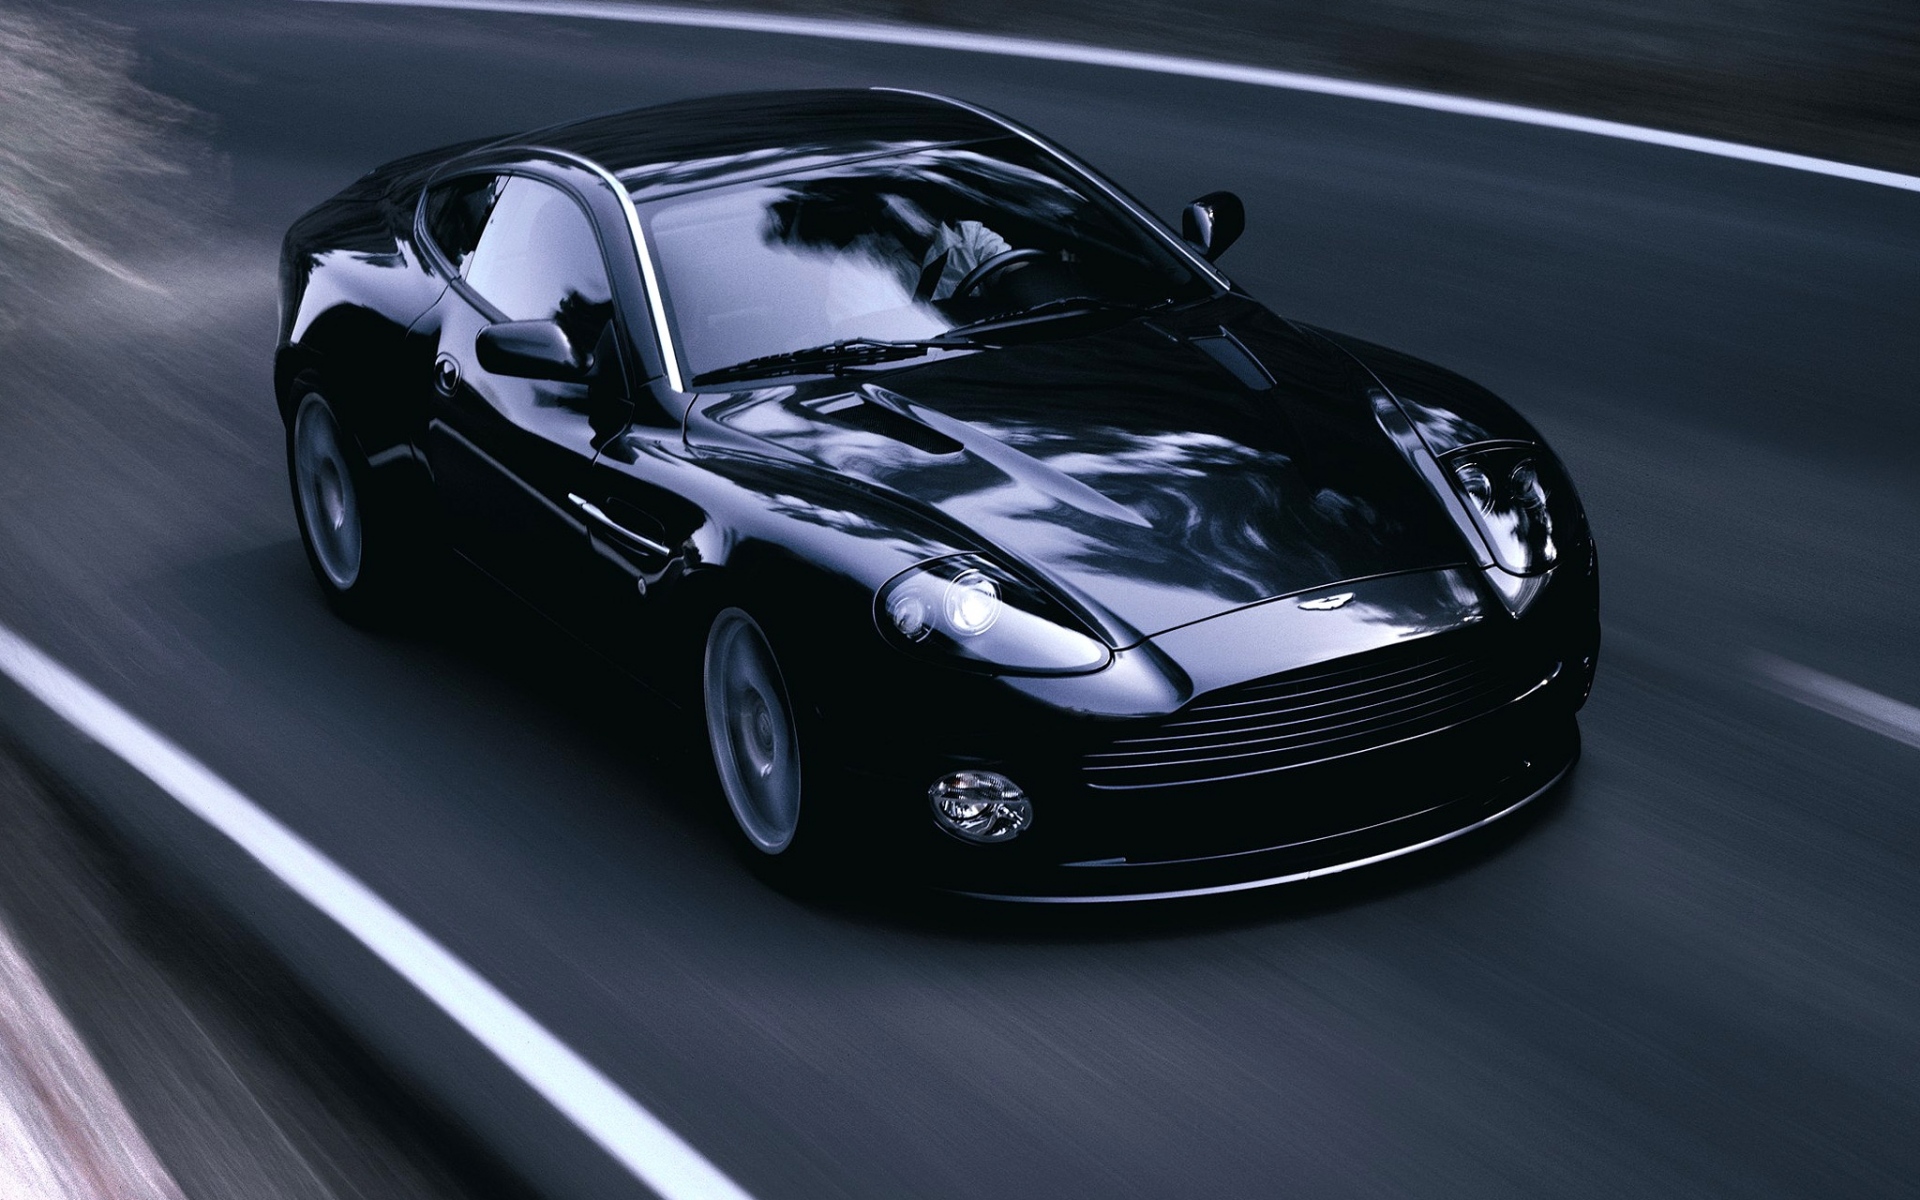 Картинки Aston martin, v12, побеждает, 2004, черный, вид спереди, стиль, асфальт фото и обои на рабочий стол